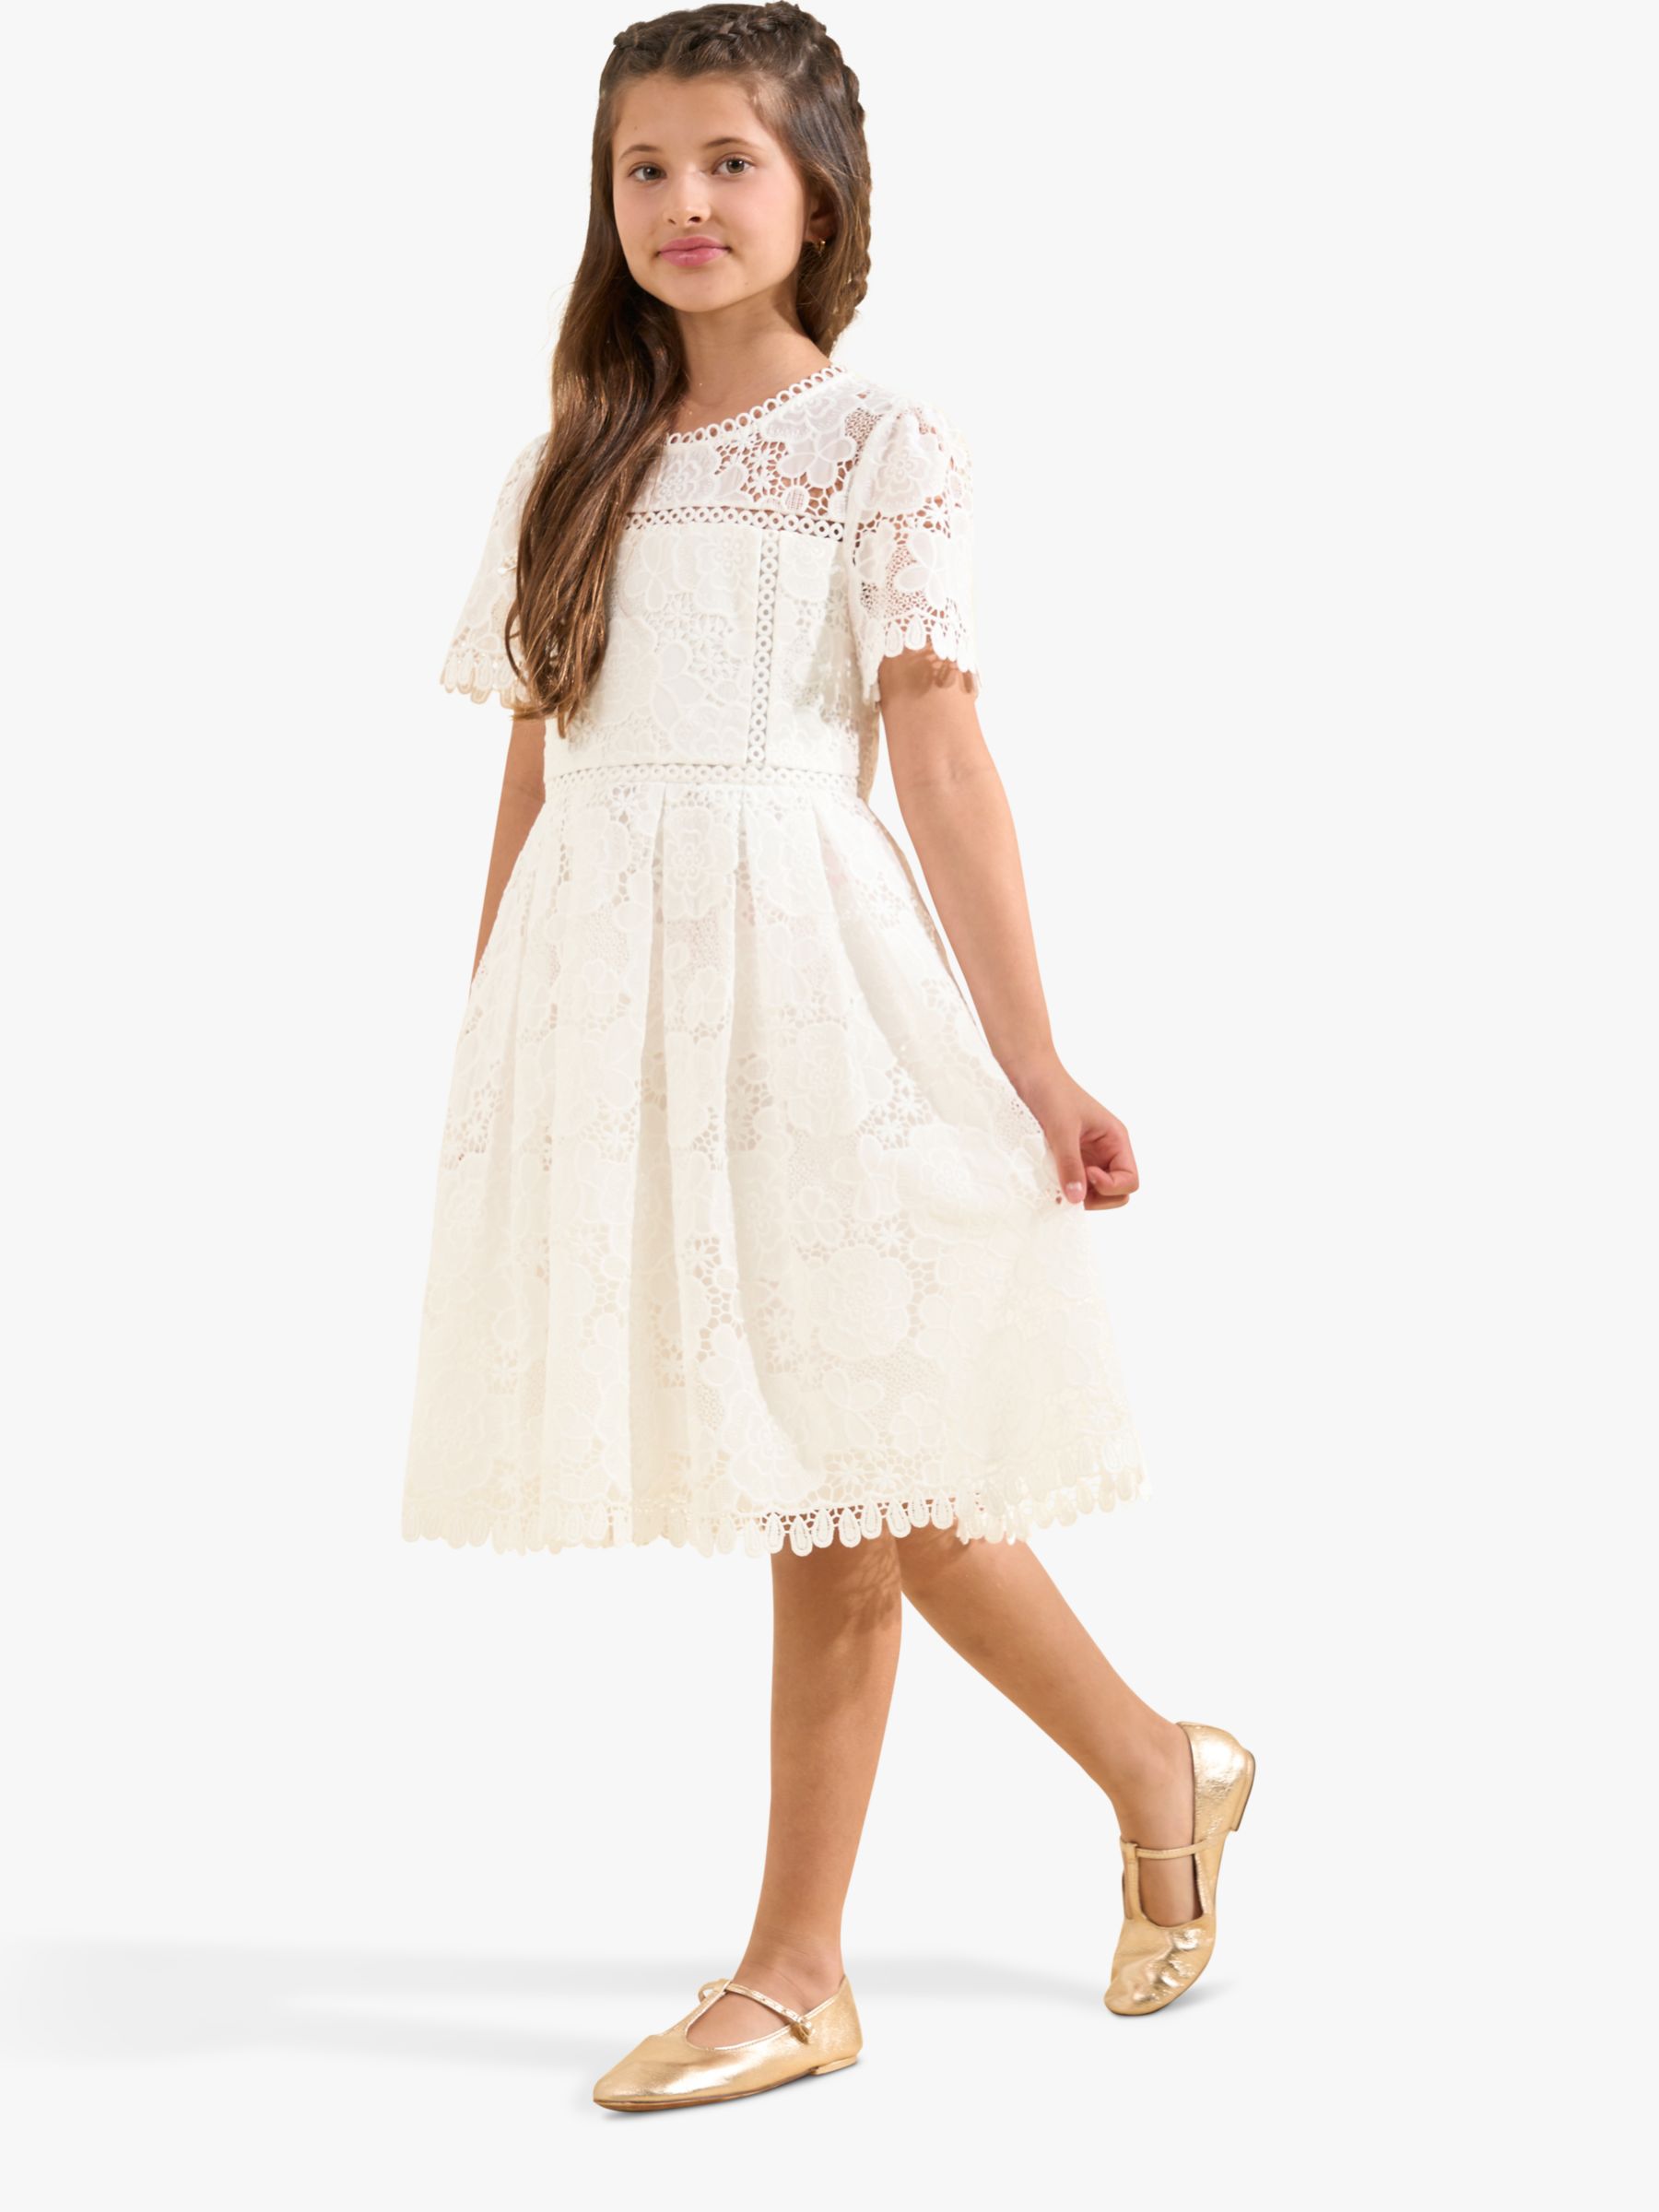 Angel & Rocket Kids' Mavea Lace Dress, White, 11 years